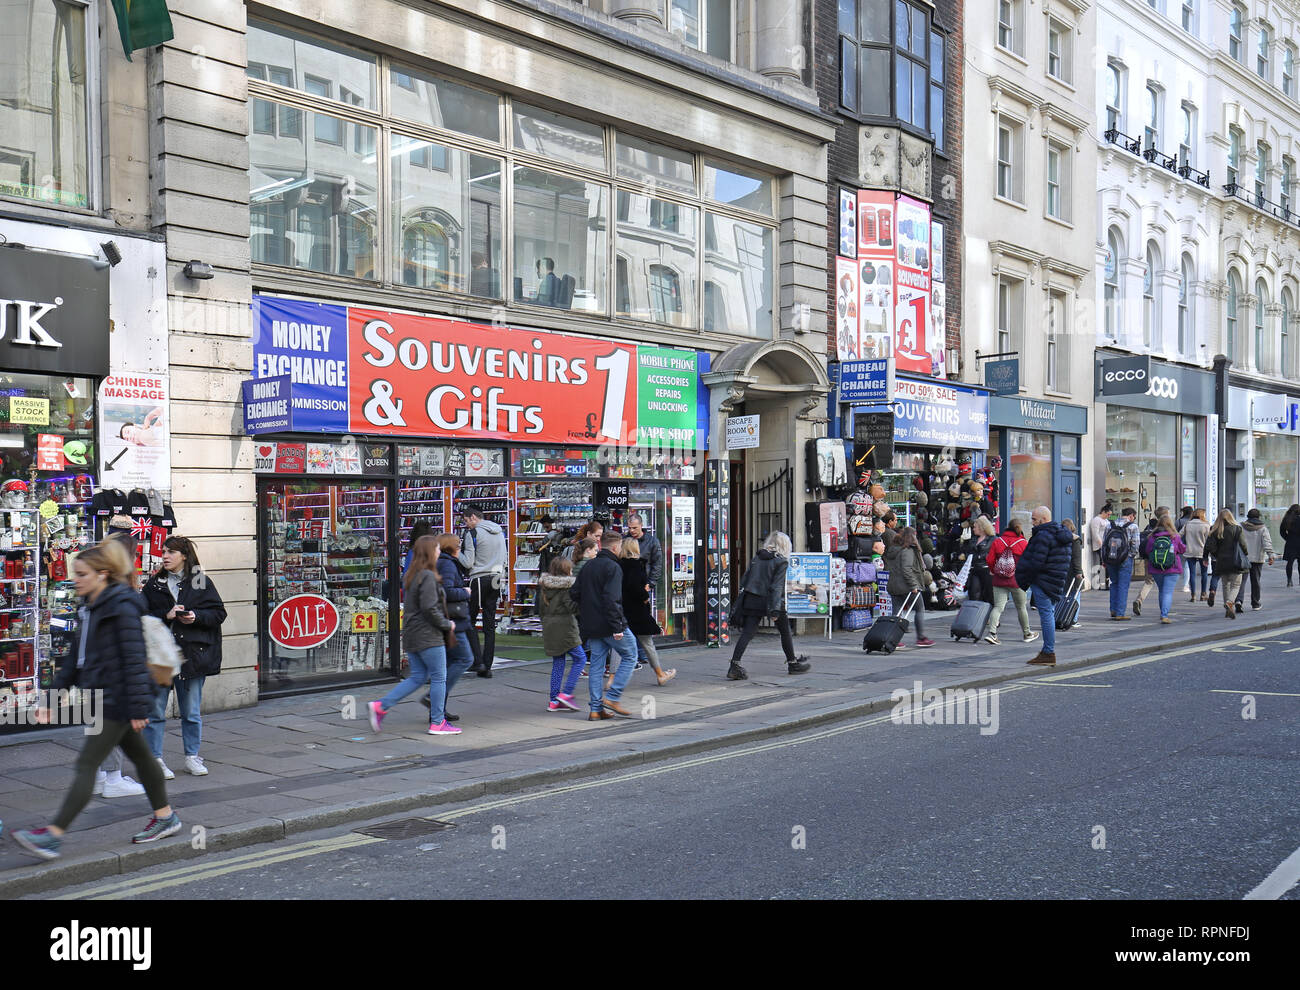 Et une boutique de souvenirs ringards sur Oxford Street de Londres, près de Tottenham Court Road. Banque D'Images